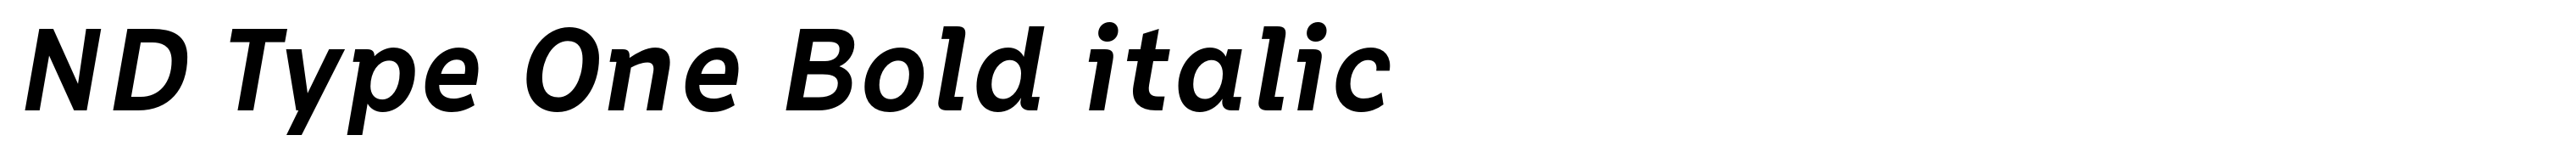 ND Type One Bold italic